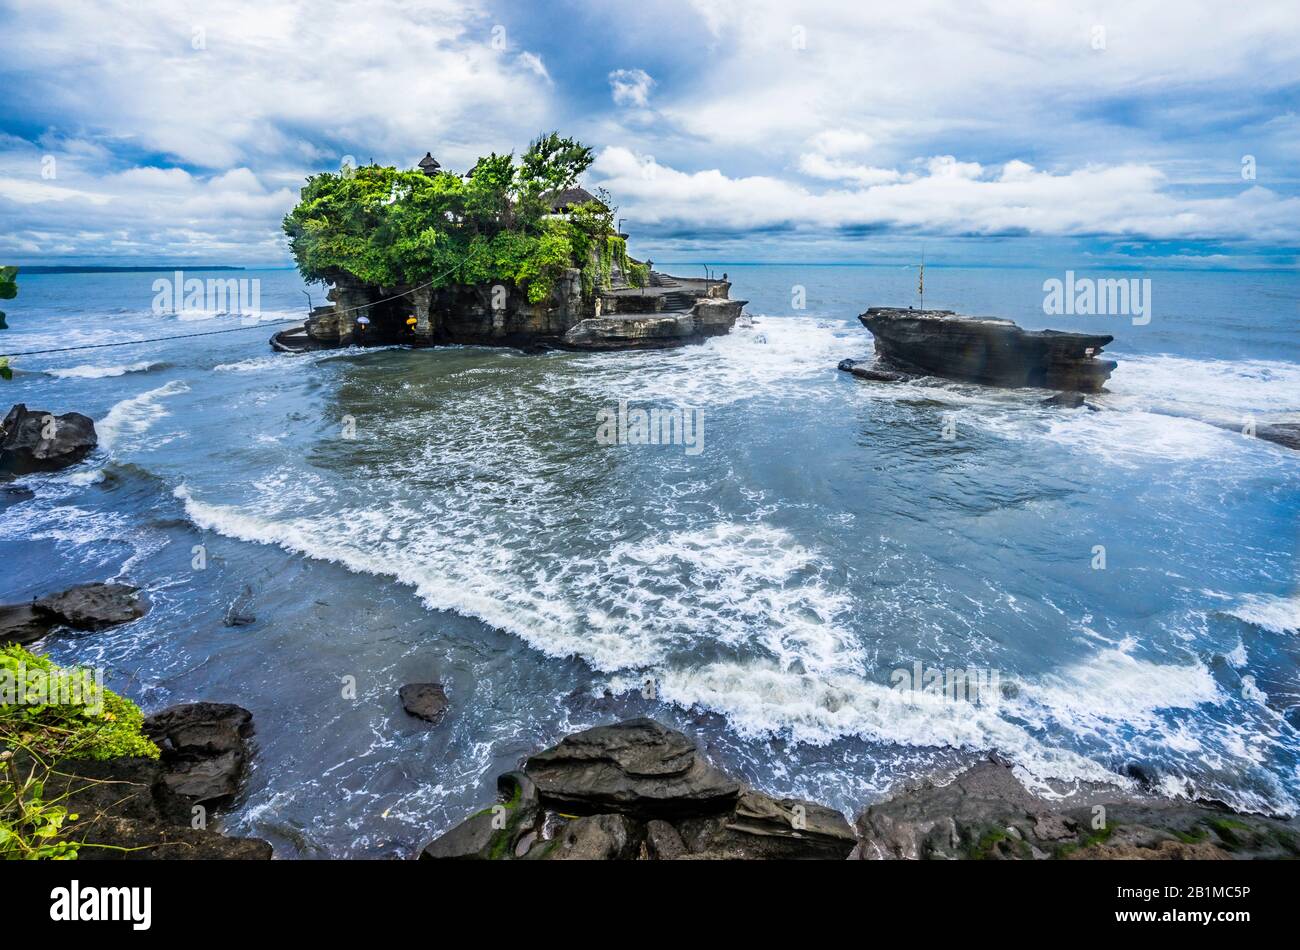 Vue sur Tanah Lot, une formation de roches au large de l'île indonésienne de Bali, qui abrite un ancien temple de pèlerinage hindou Pura Tanah Lot, Bali, Indonésie Banque D'Images